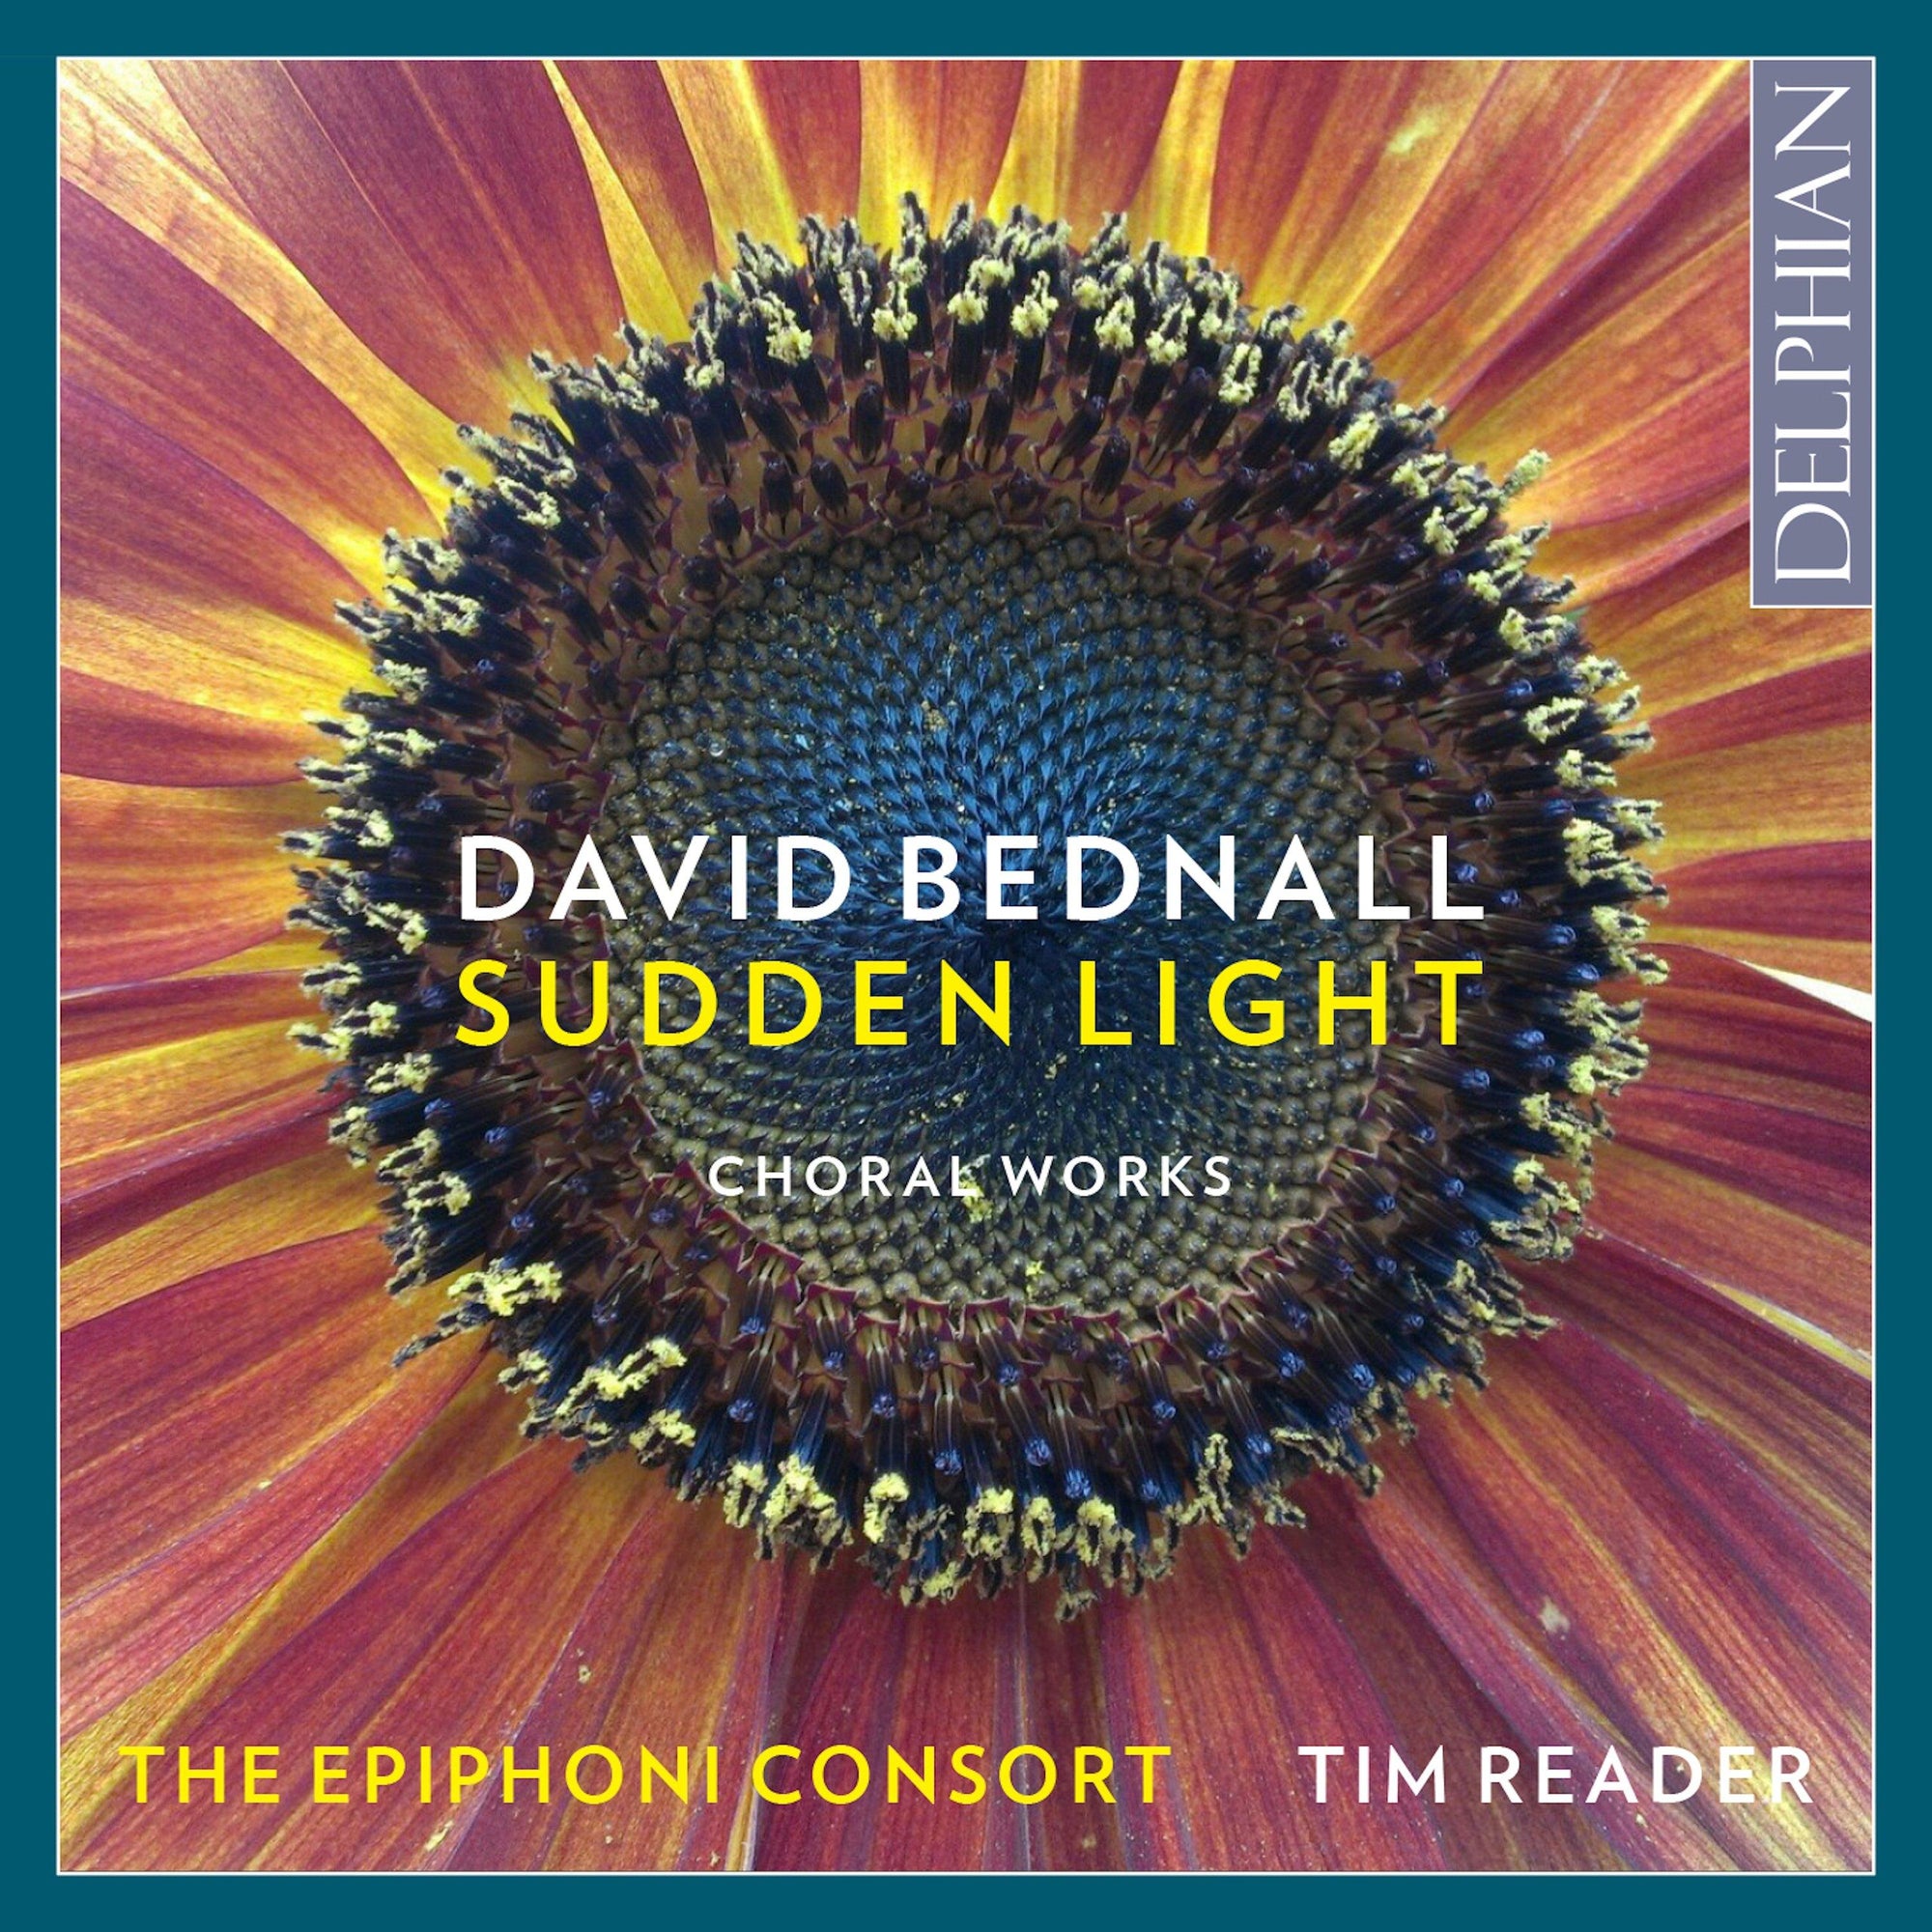 David Bednall: Sudden Light (Choral Works) CD Delphian Records